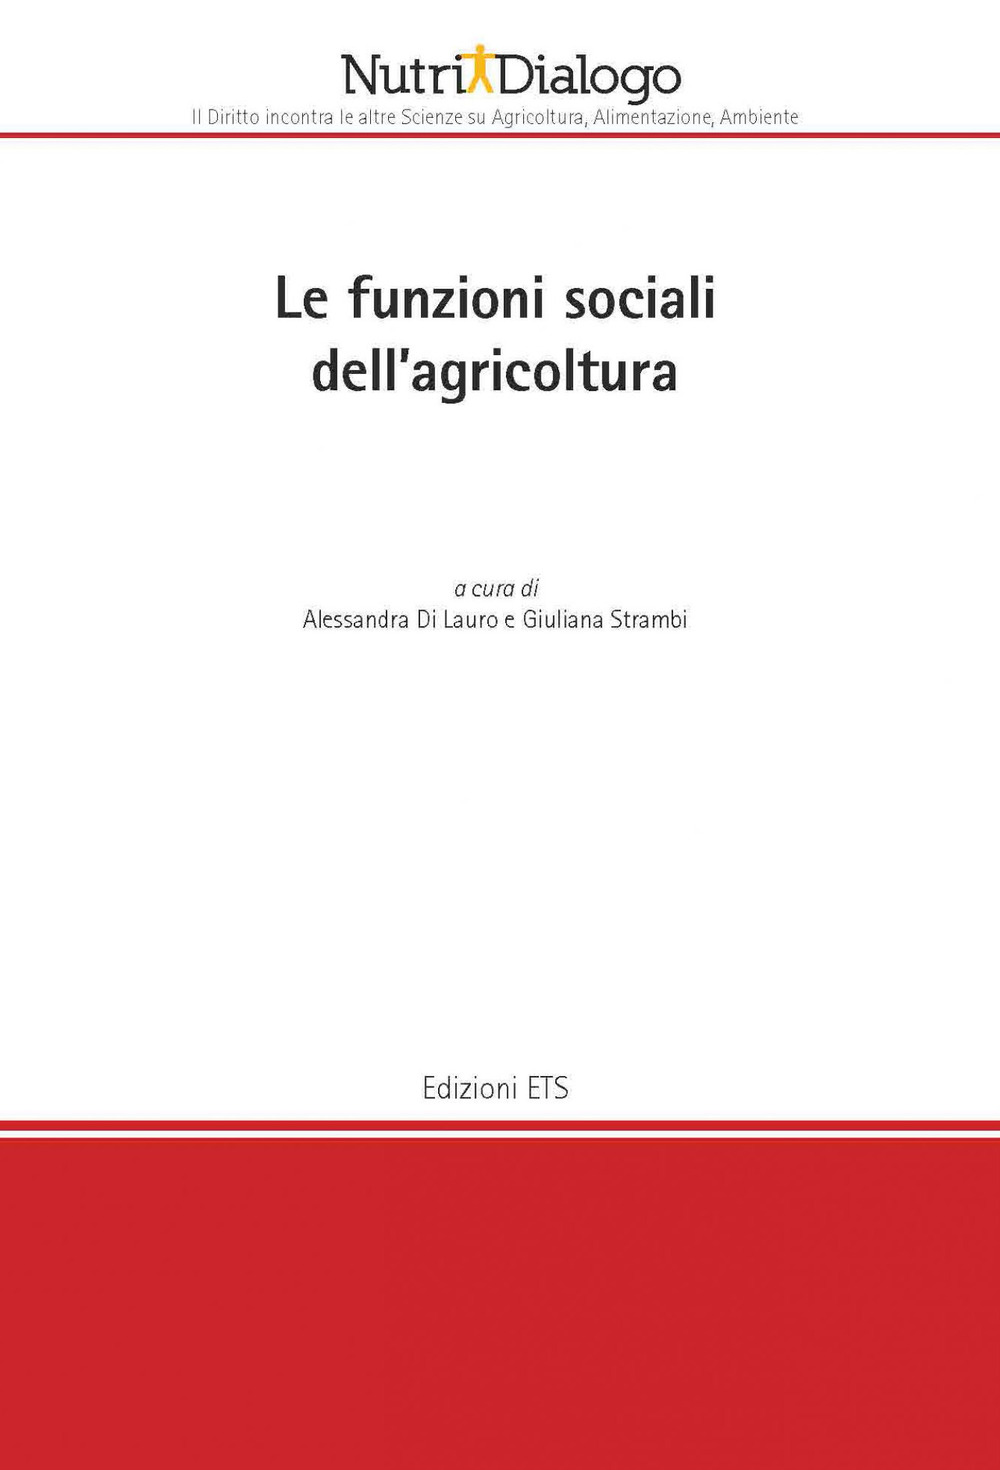 Le funzioni sociali della agricoltura